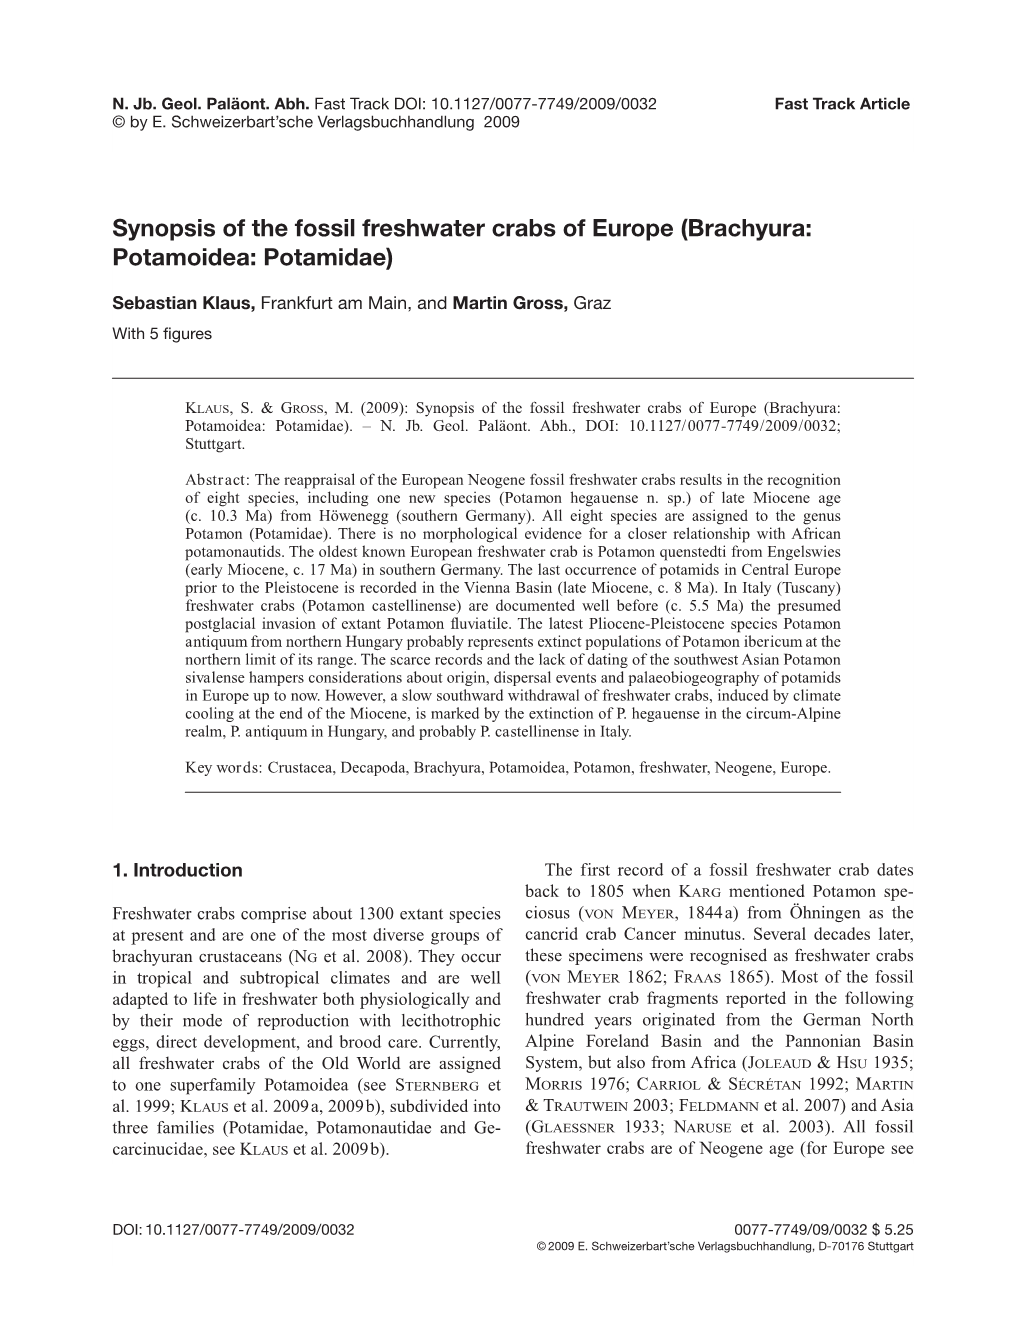 Synopsis of the Fossil Freshwater Crabs of Europe (Brachyura: Potamoidea: Potamidae)